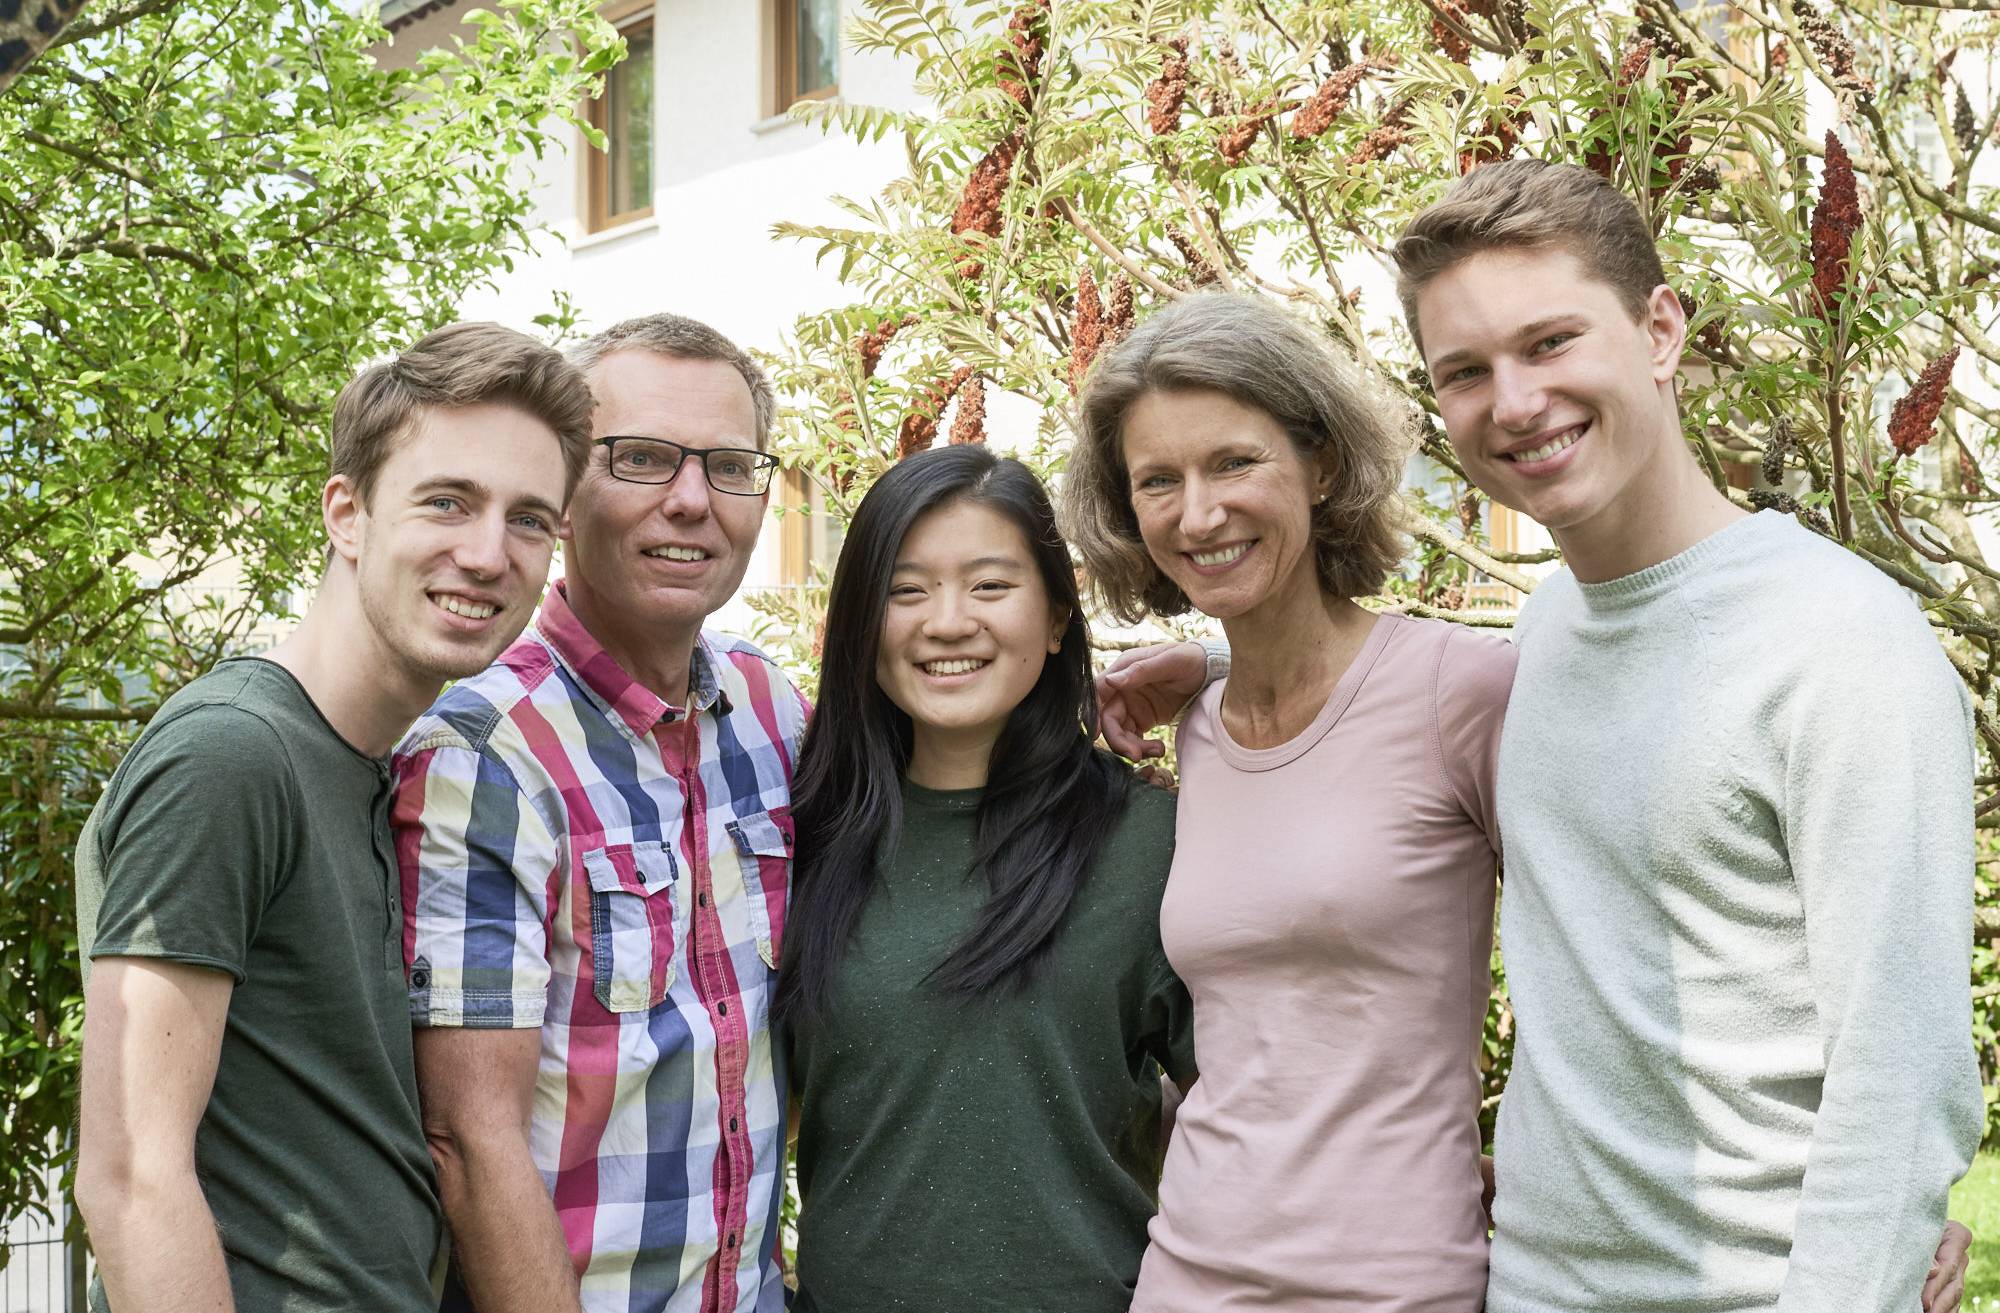  Die Schülerinnen und Schüler freuen sich darauf, das Alltagsleben bei einer Familie in Wuppertal zu erleben.  